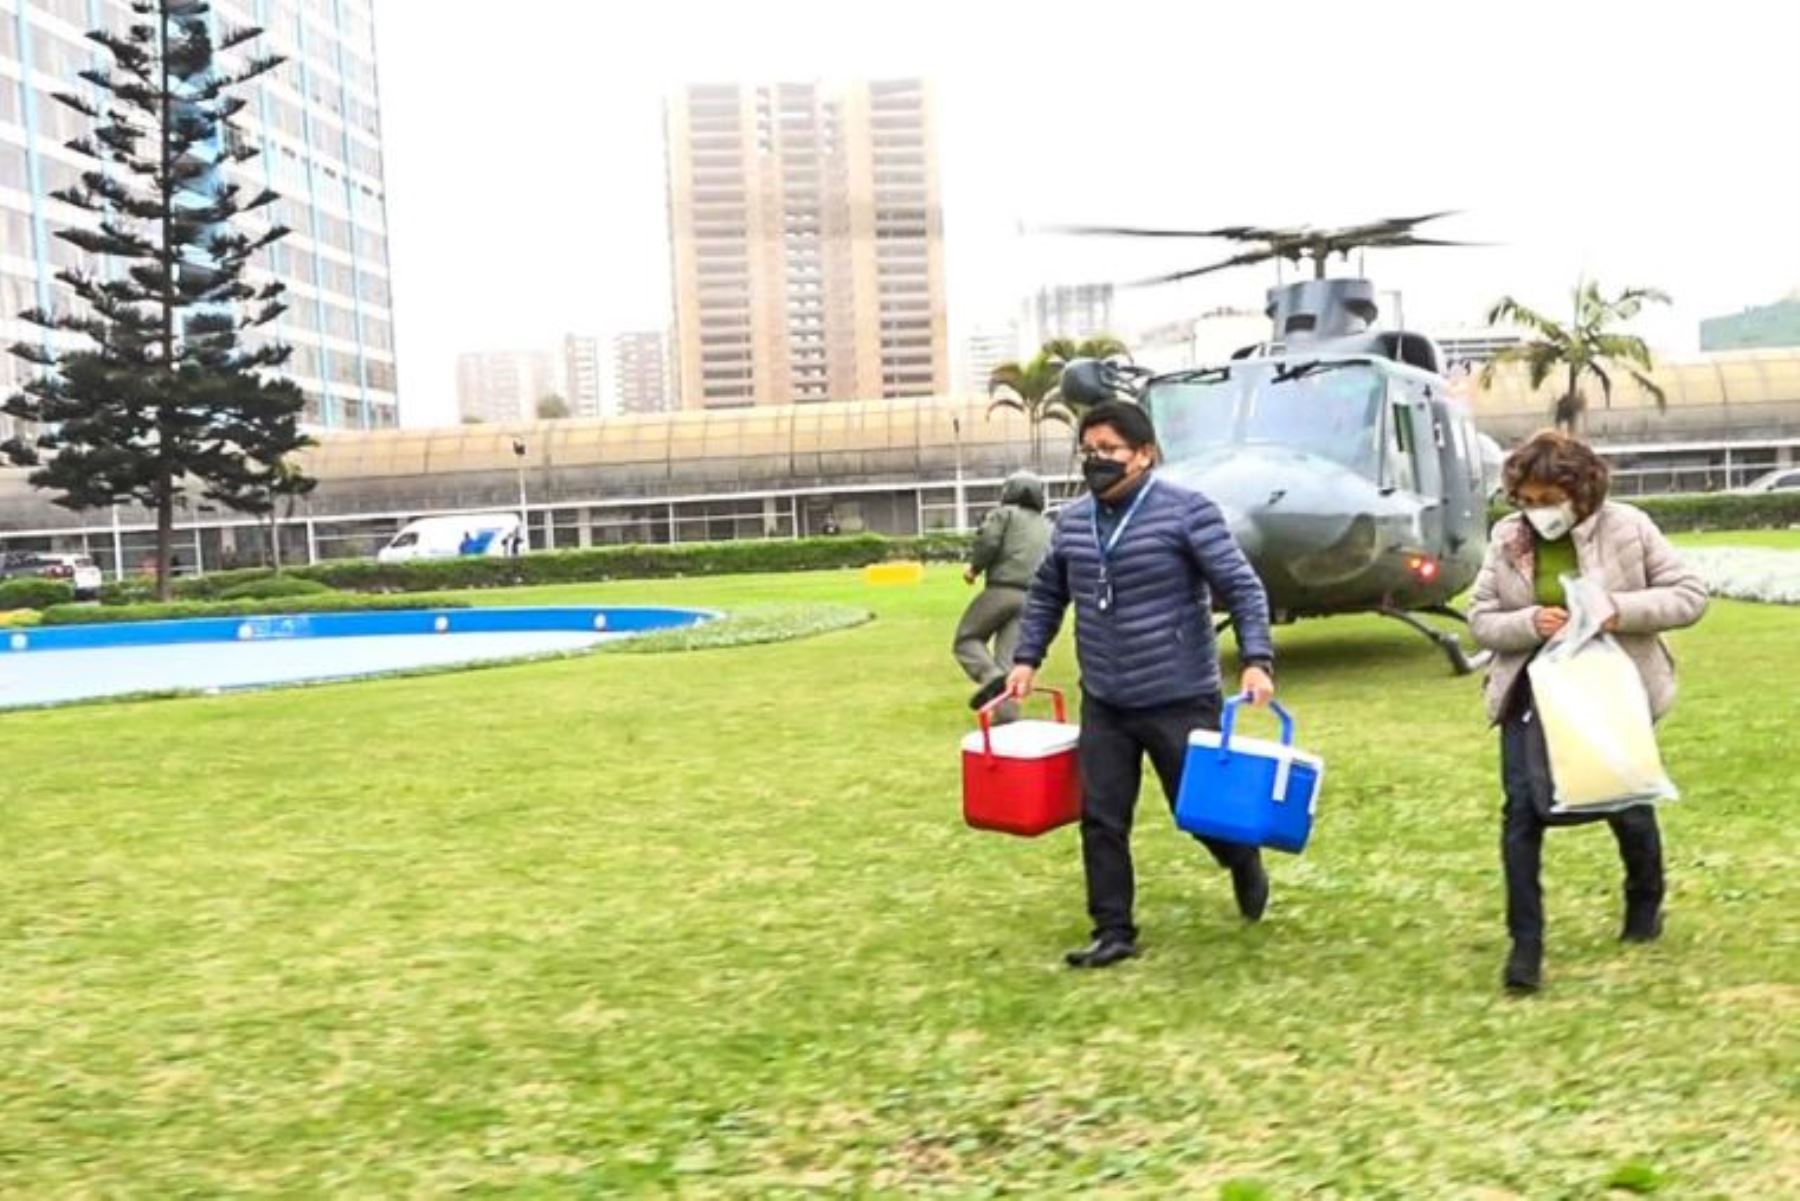 Aterrizó en el Hospital Edgardo Rebagliati el helicóptero de Aviación Naval junto con los médicos especialistas y los órganos donados (corazón y pulmones) desde Arequipa para pacientes del INCOR y el Hospital Almenara.
Foto: EsSalud